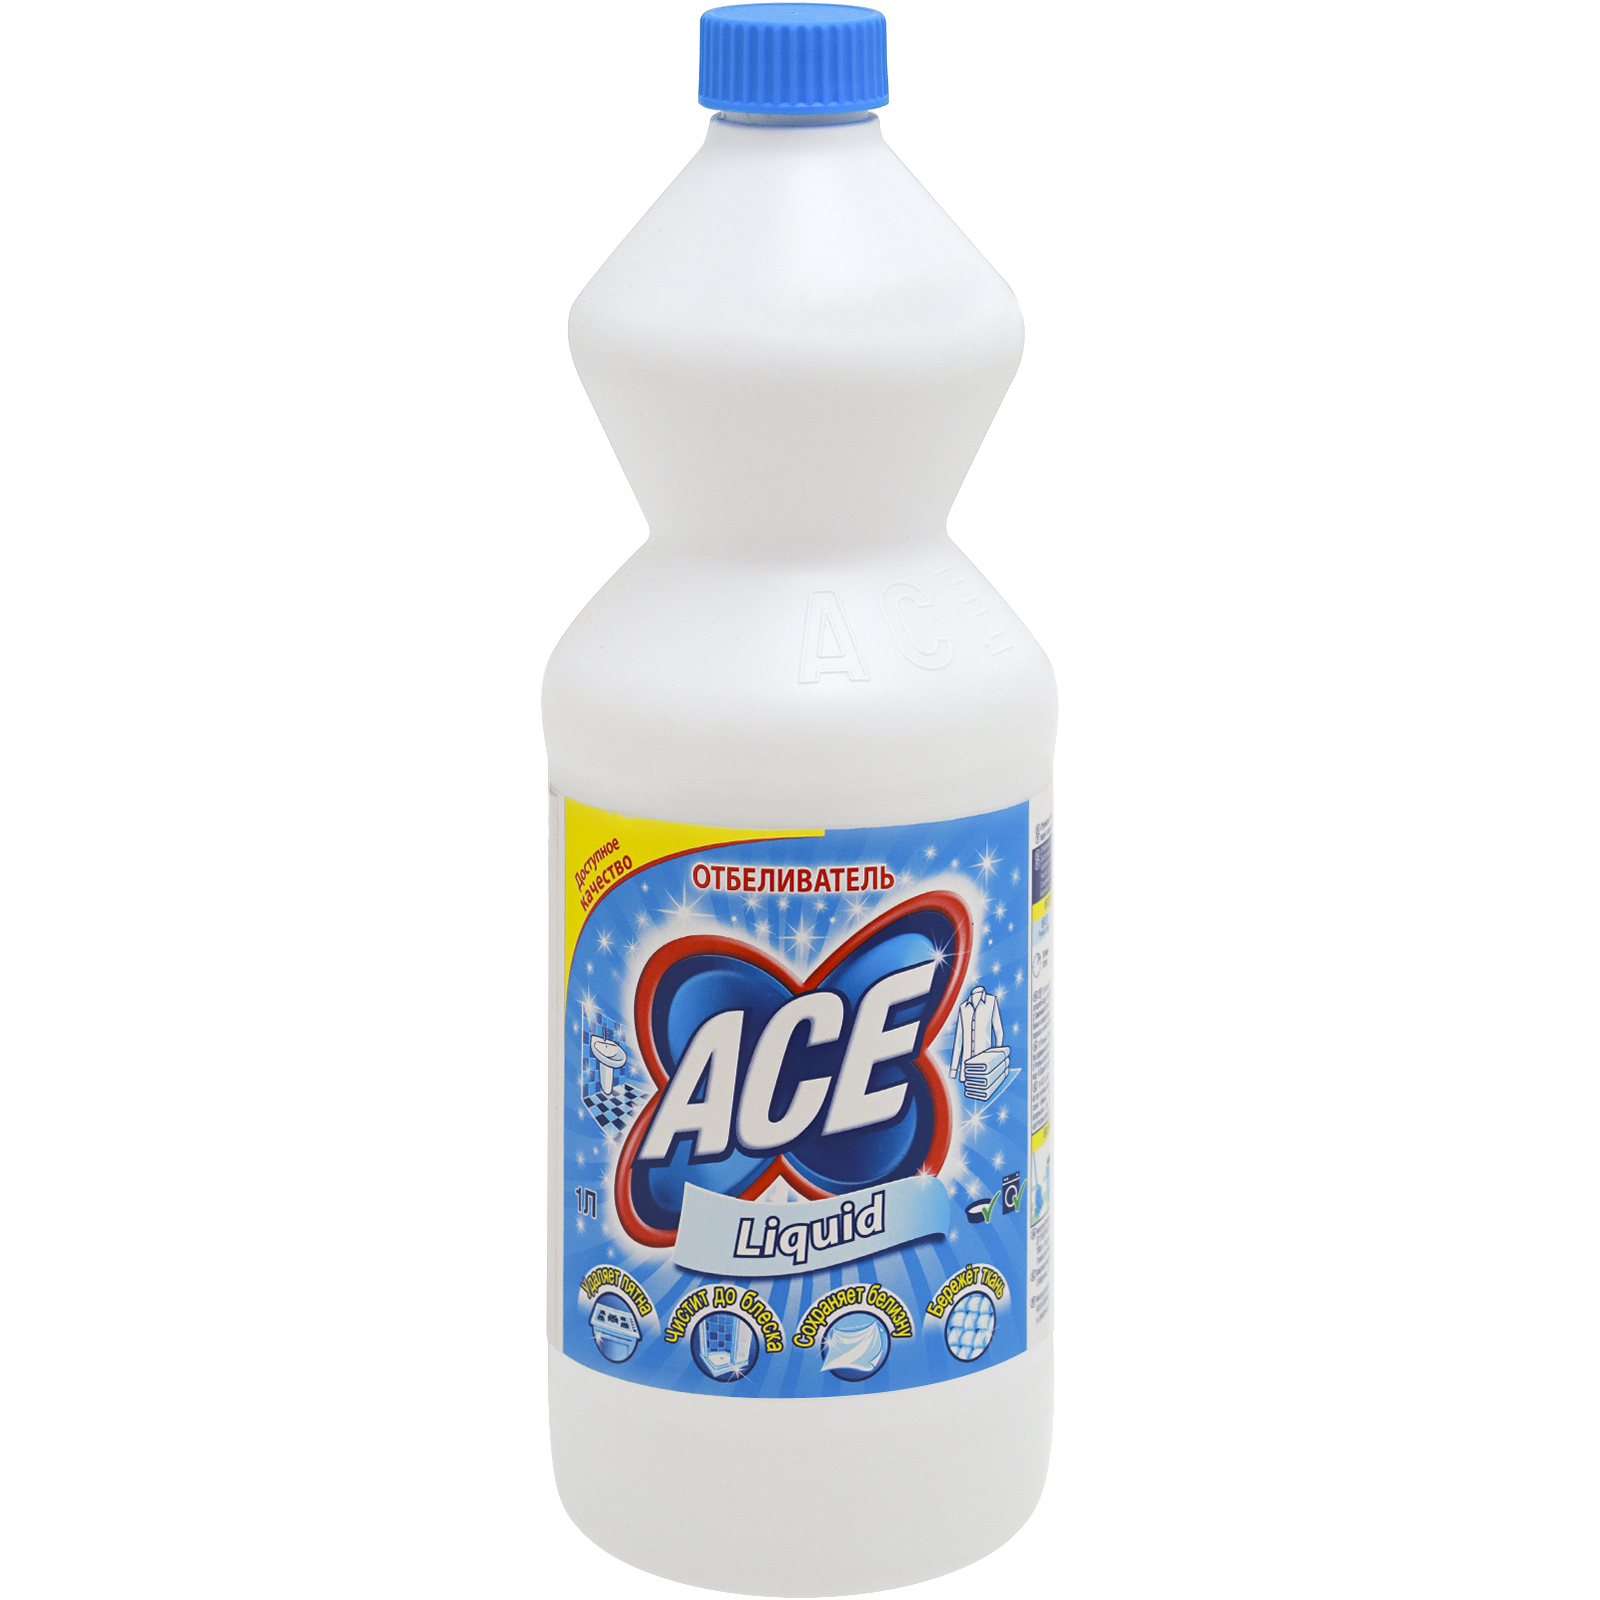 Айс л. Ace отбеливатель жидкий 1л. Отбеливатель Ace 1000 мл. Ace отбеливатель Ace жидкий 1л. Ace отбеливатель Gel automat 1л.